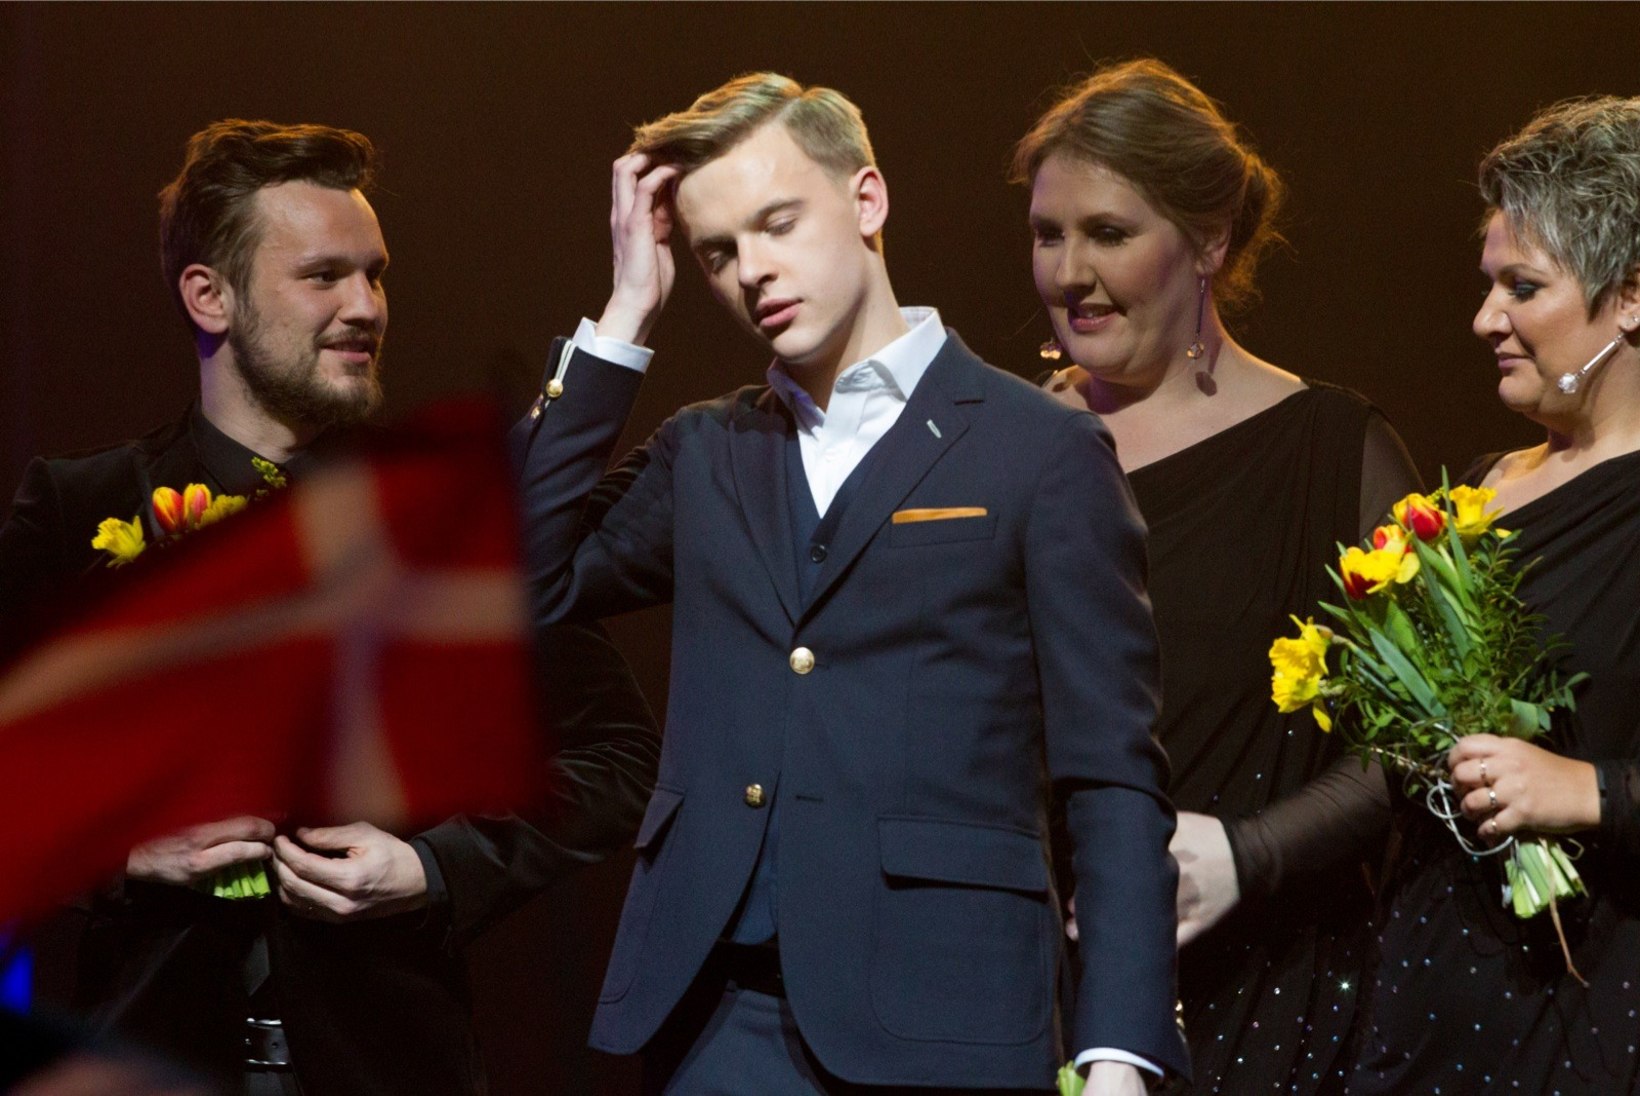 Kas jälle poolfinaali viimased? Vaata, millist kohta Eestile tänavusel Eurovisionil ennustatakse!